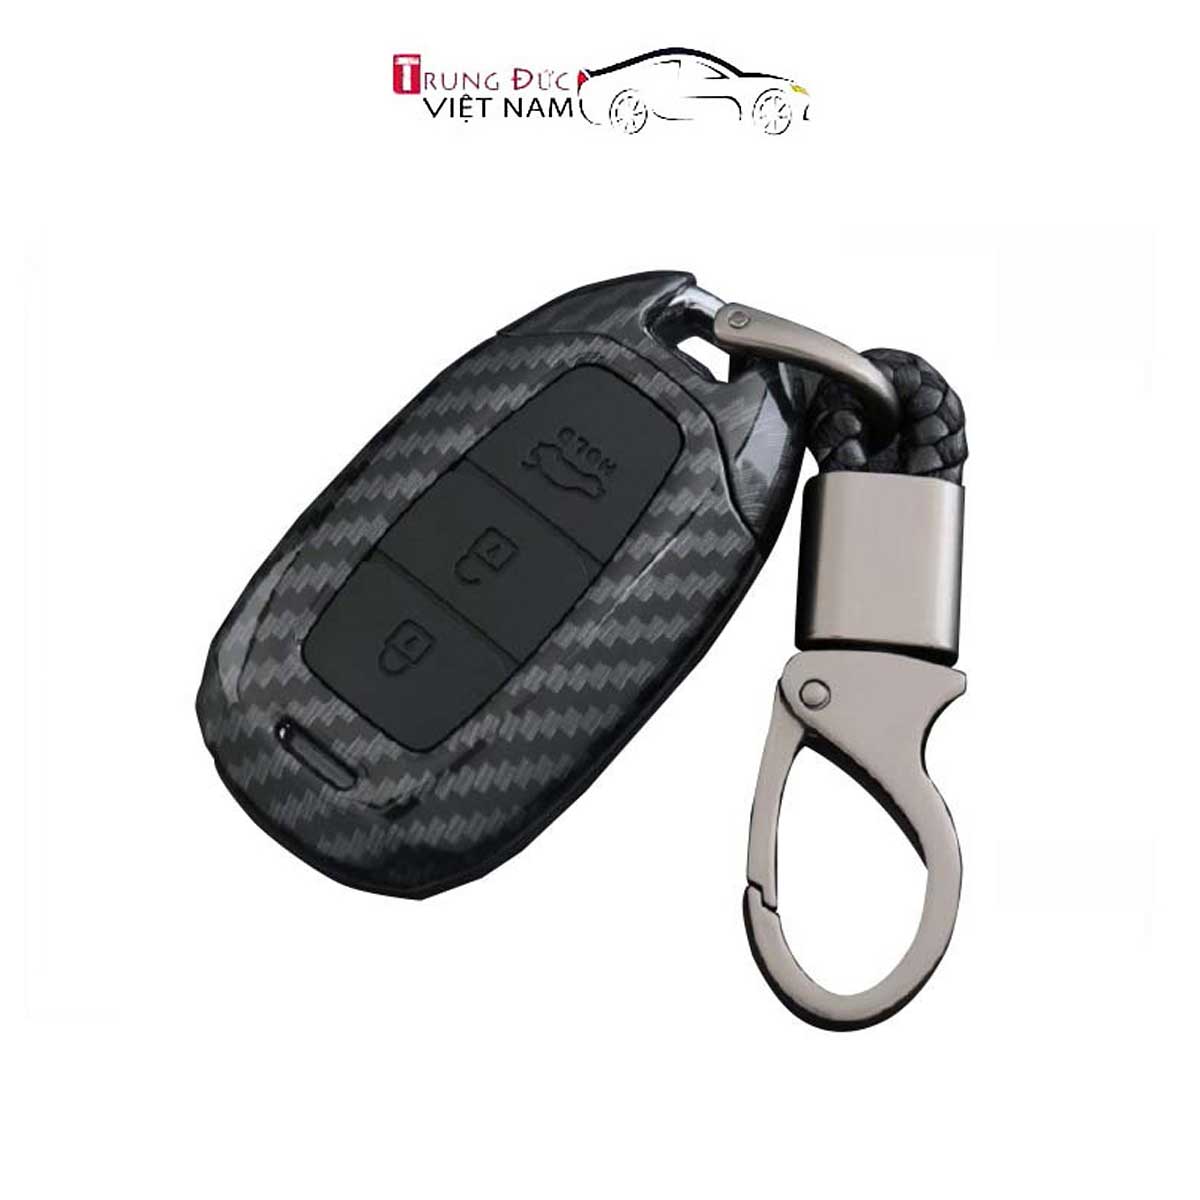 Ốp chìa khóa dành cho xe Hyundai Kona, Santafe, Accent chất liệu nhựa ABS mạ vân Cacbon - Hàng Chính Hãng